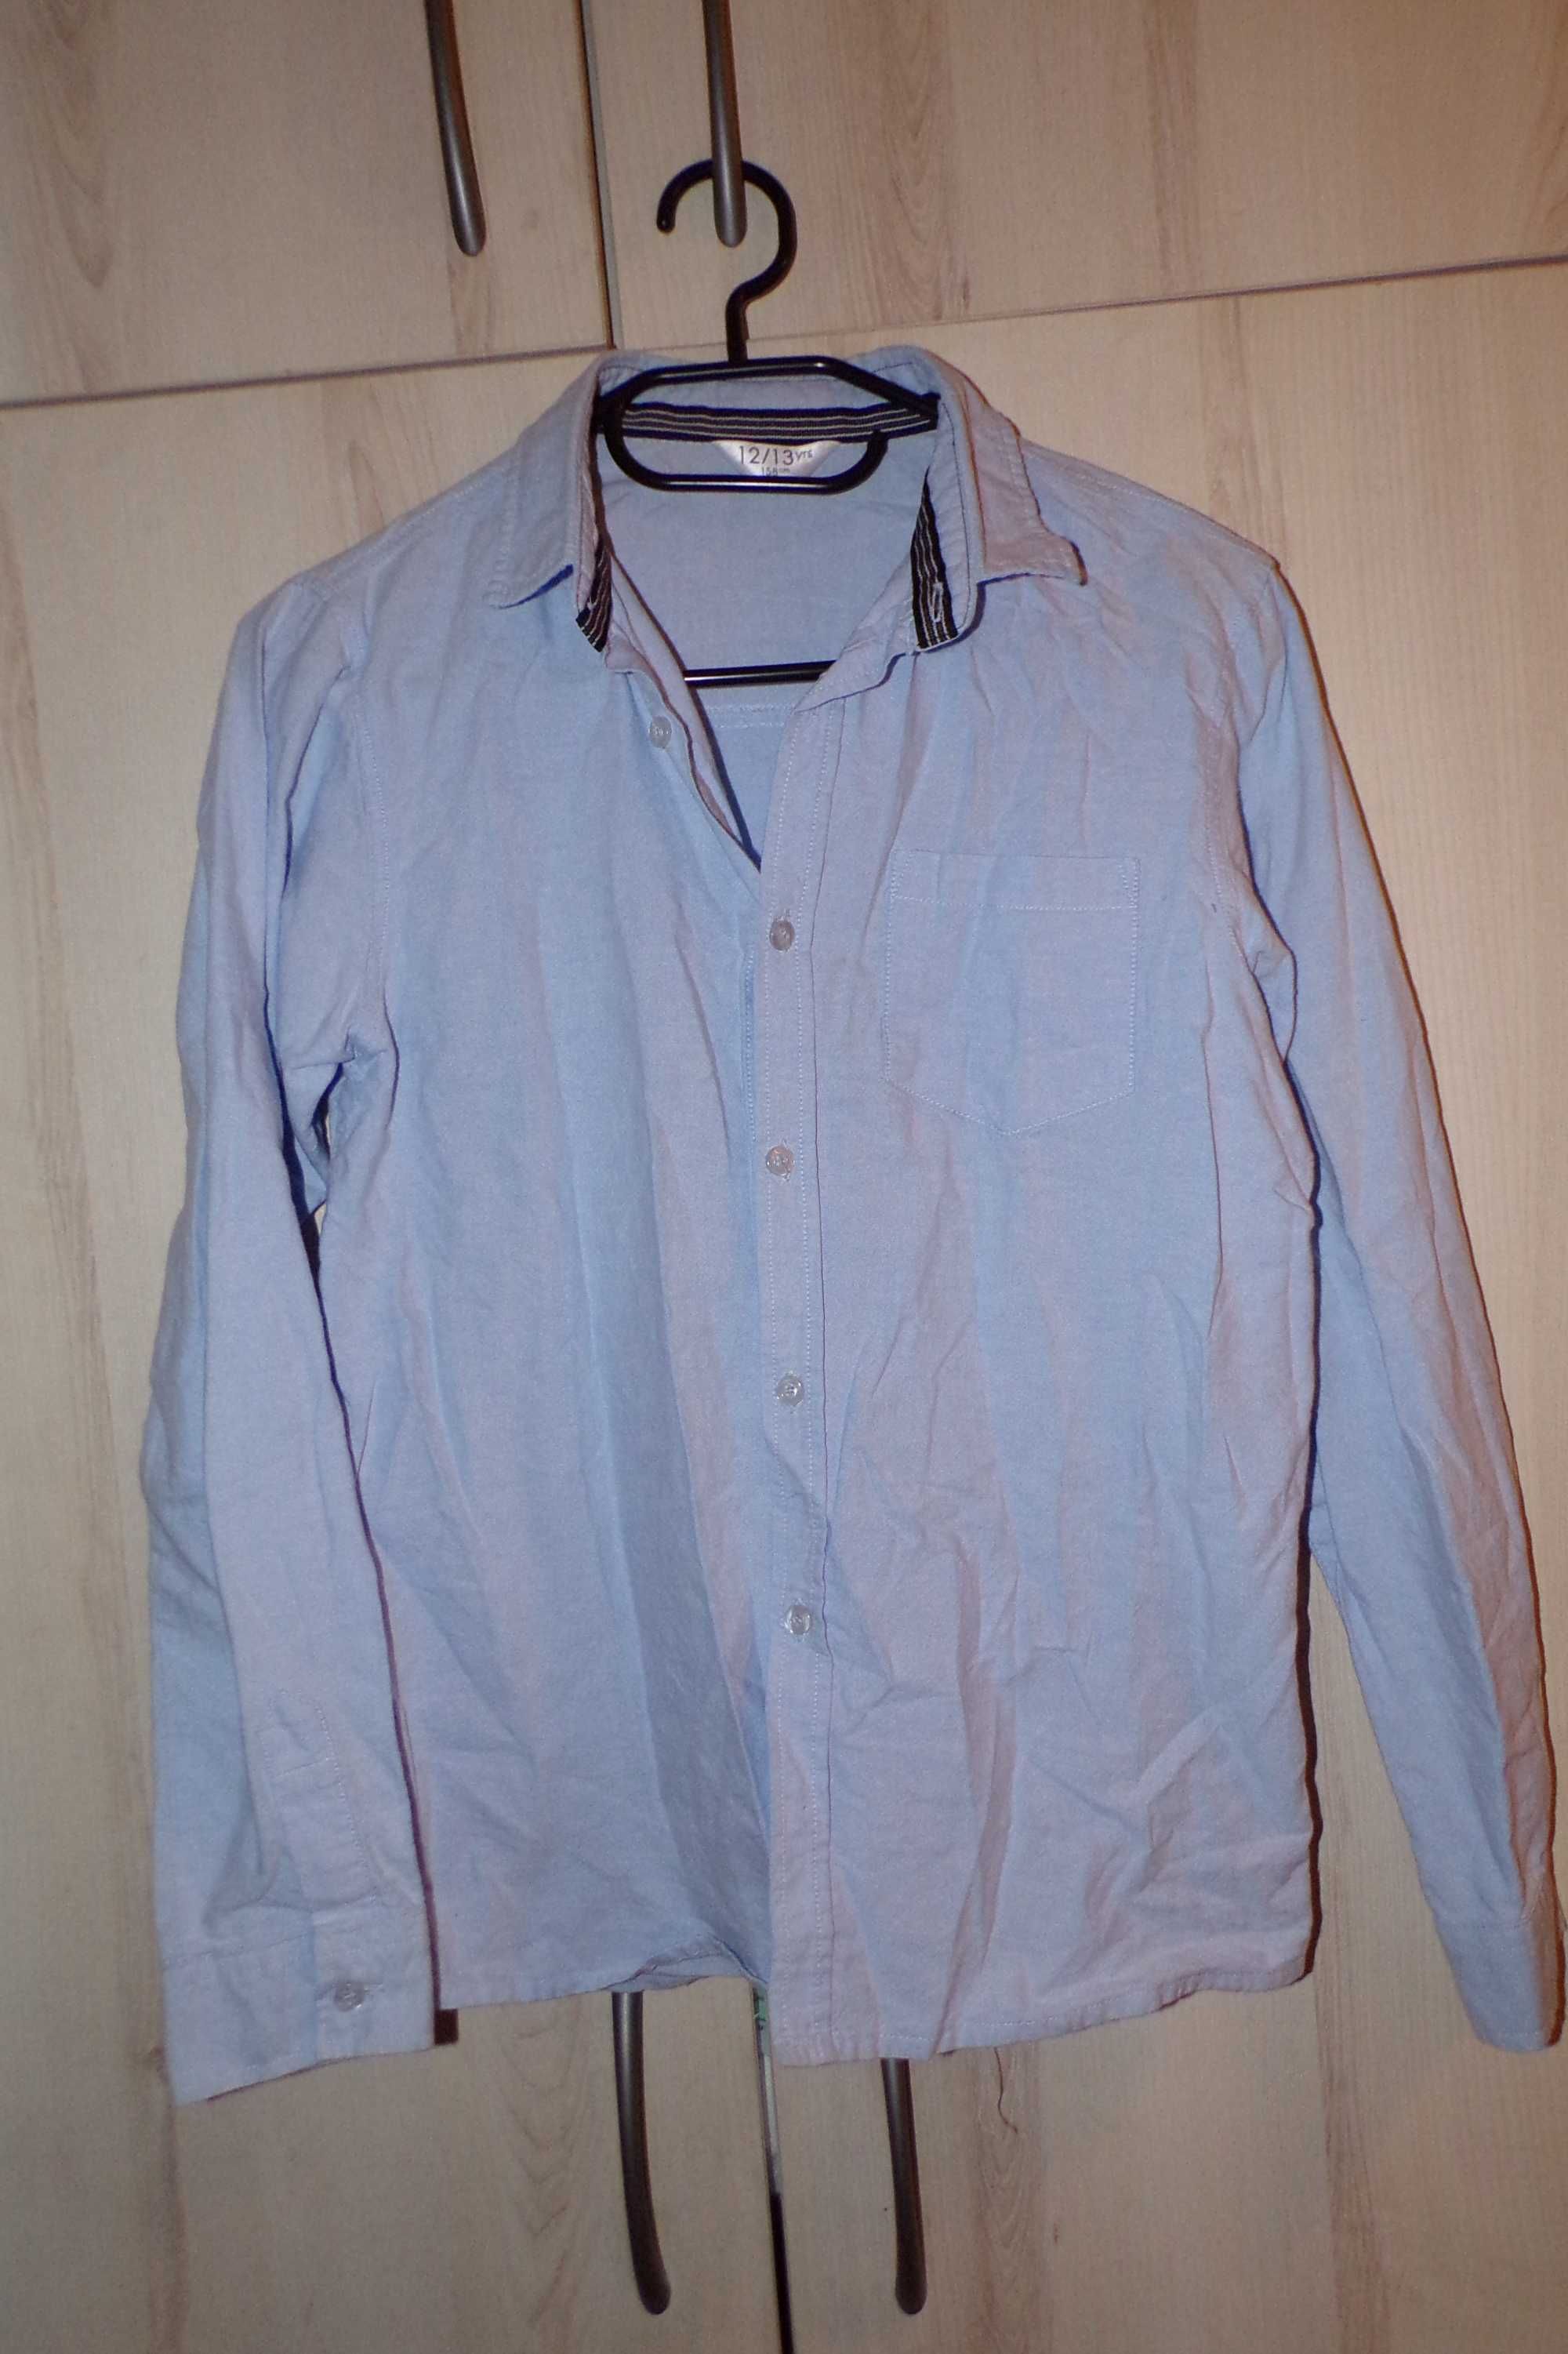 Jasnoniebieska koszula chłopięca 158cm